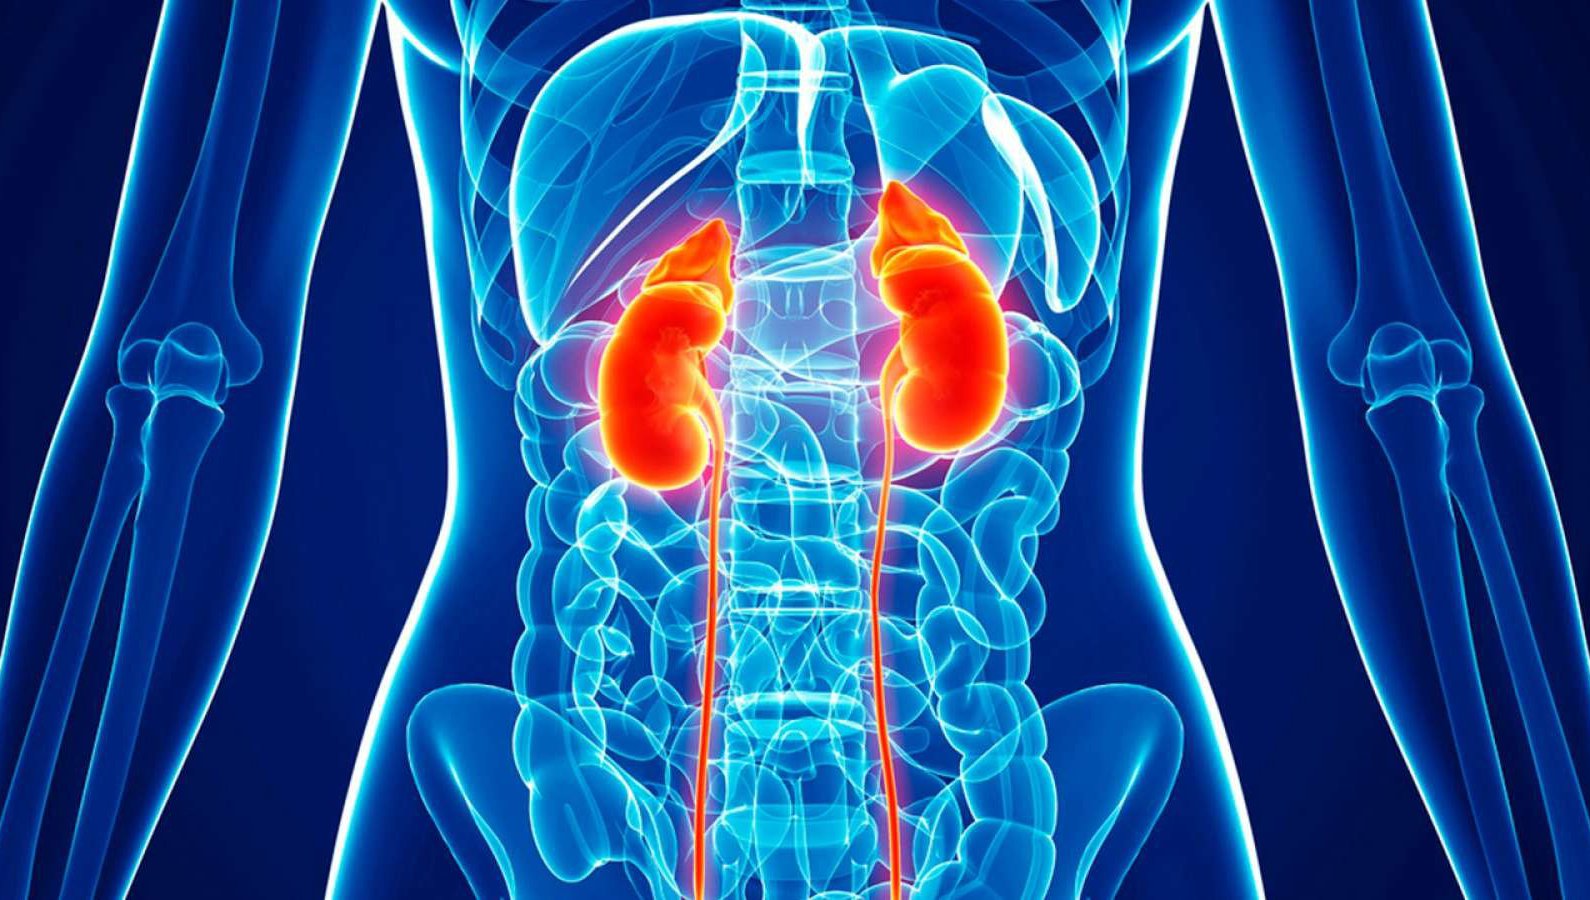 1546003722_wbz-understanding-kidney-cancer.jpg